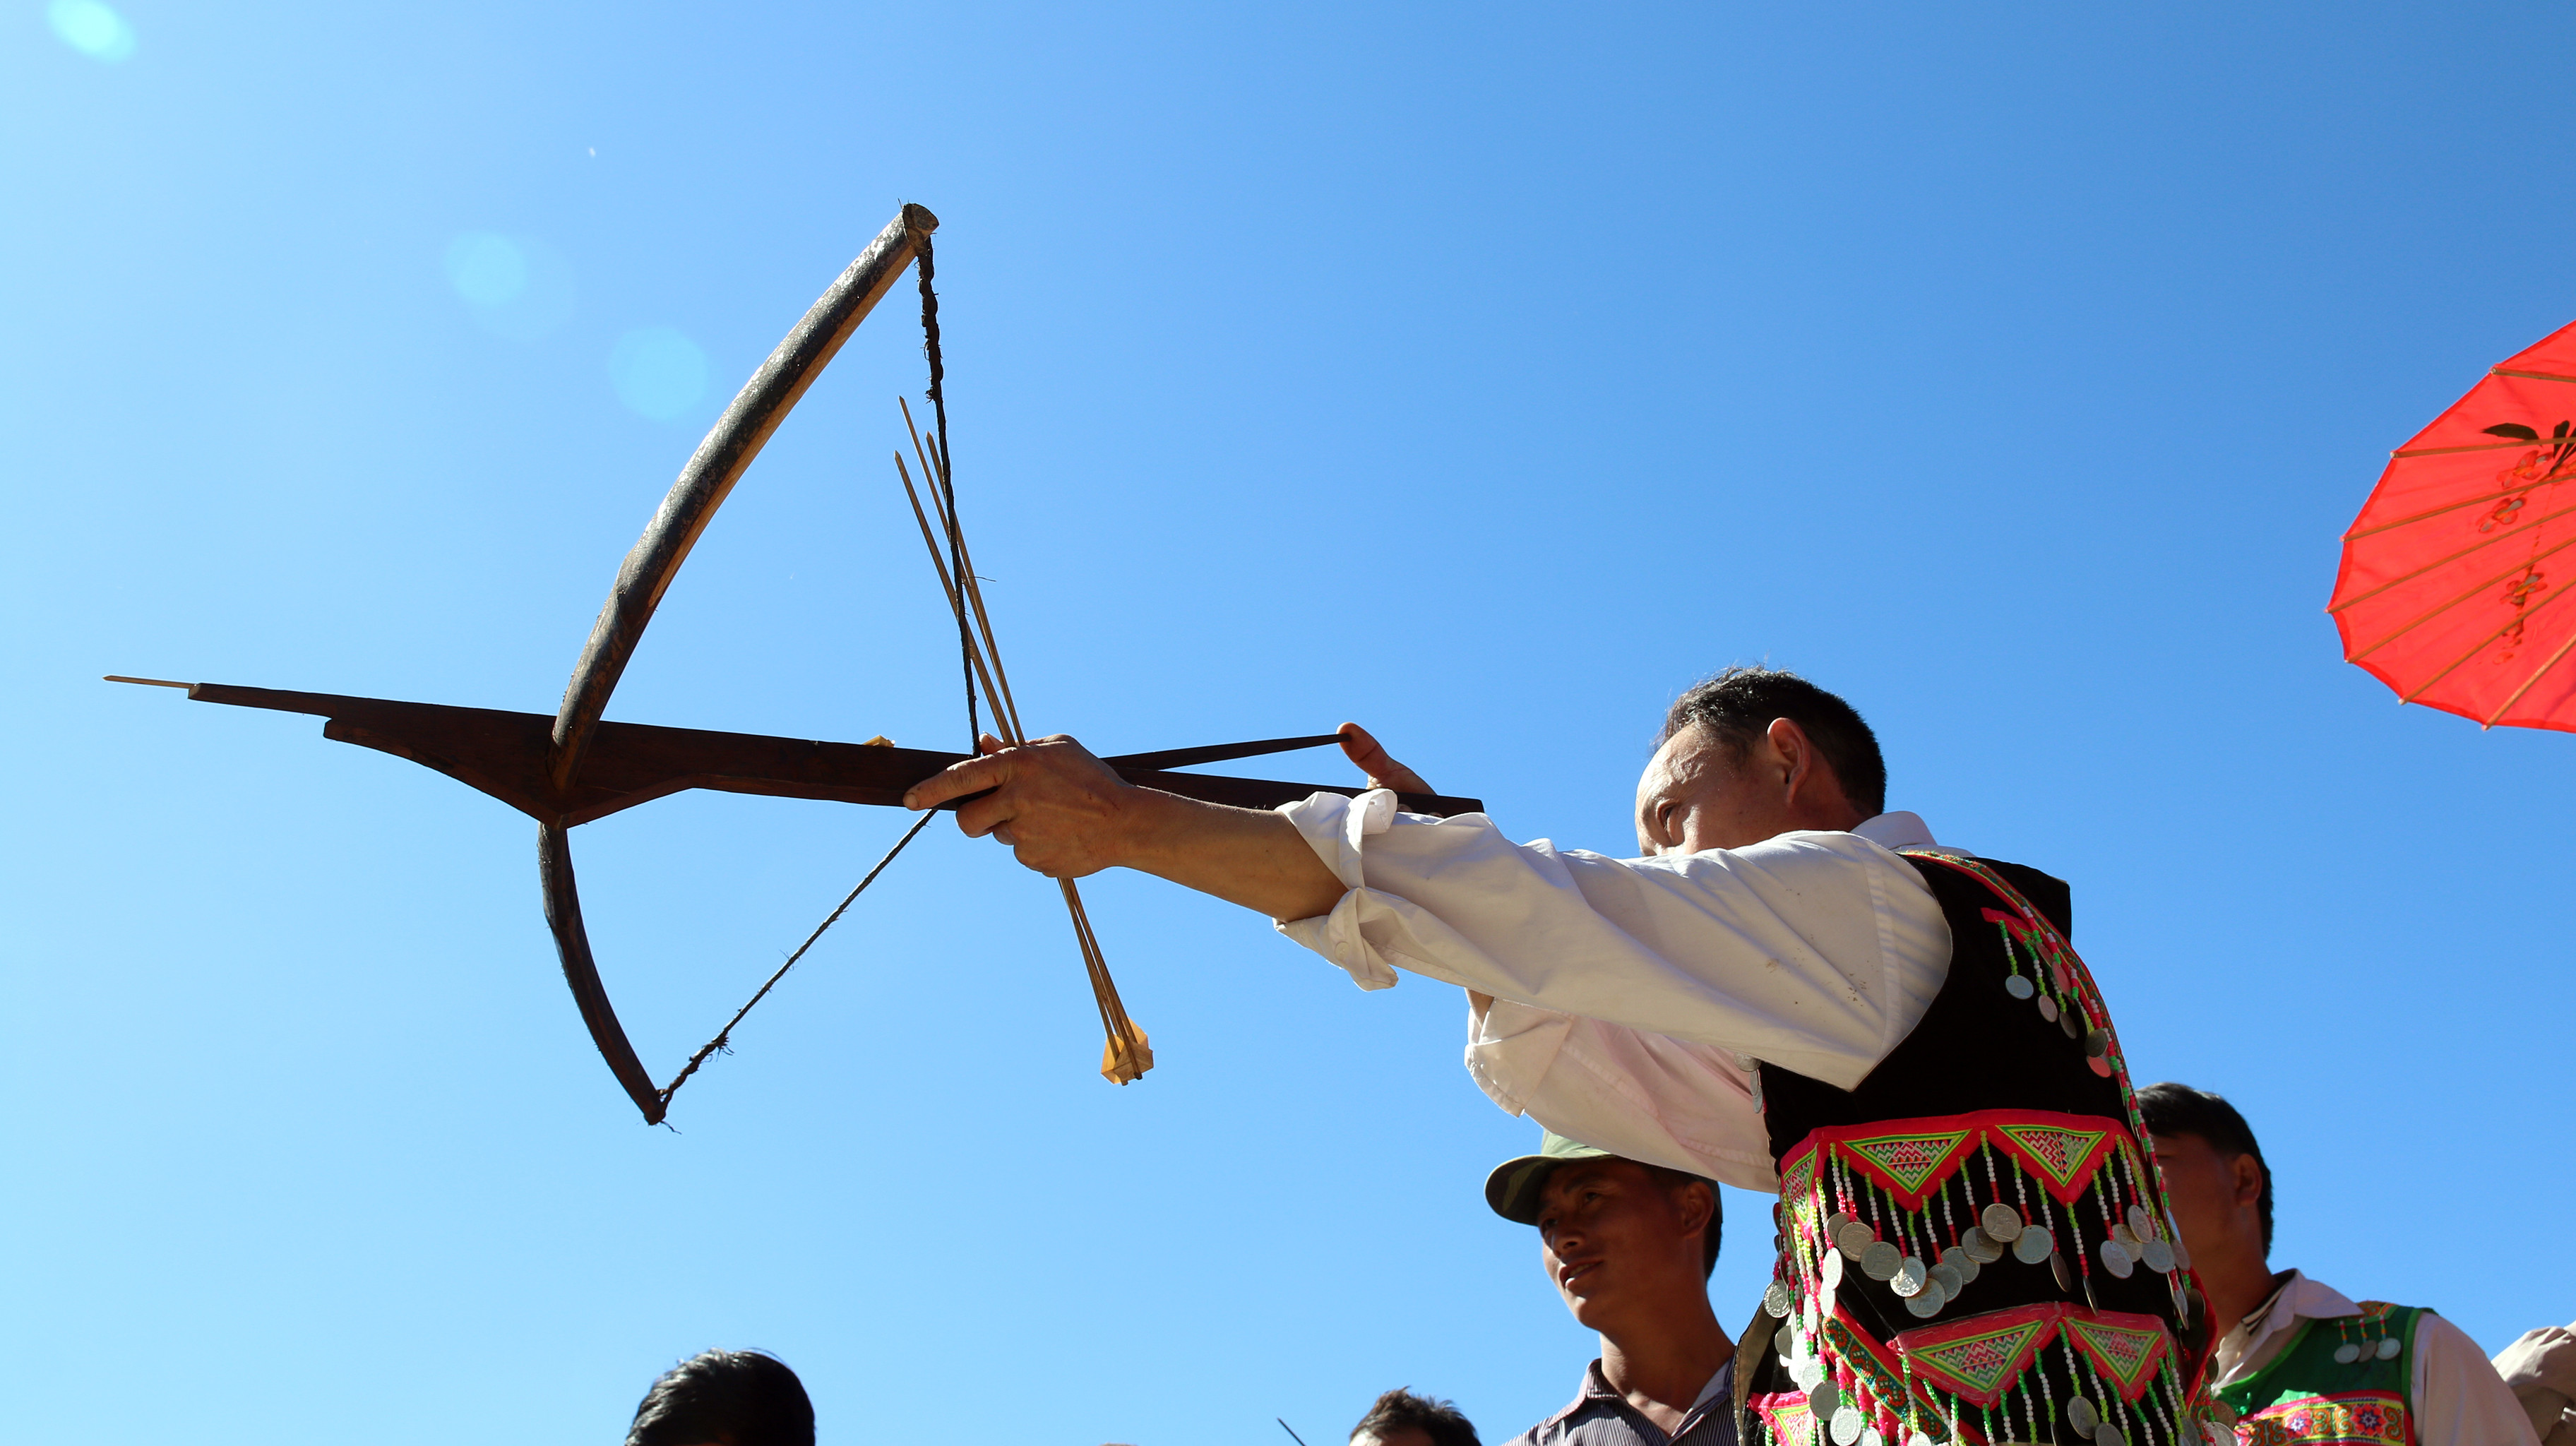 1.Nỏ ngày xưa thường được người Mông sử dụng như một công cụ để săn bắn thú rừng, thì ngày nay, cây nỏ chủ yếu được người dân đồng bào dân tộc này dùng để trổ tài thi thố trong những lễ tết. Ảnh: Đình Tuân